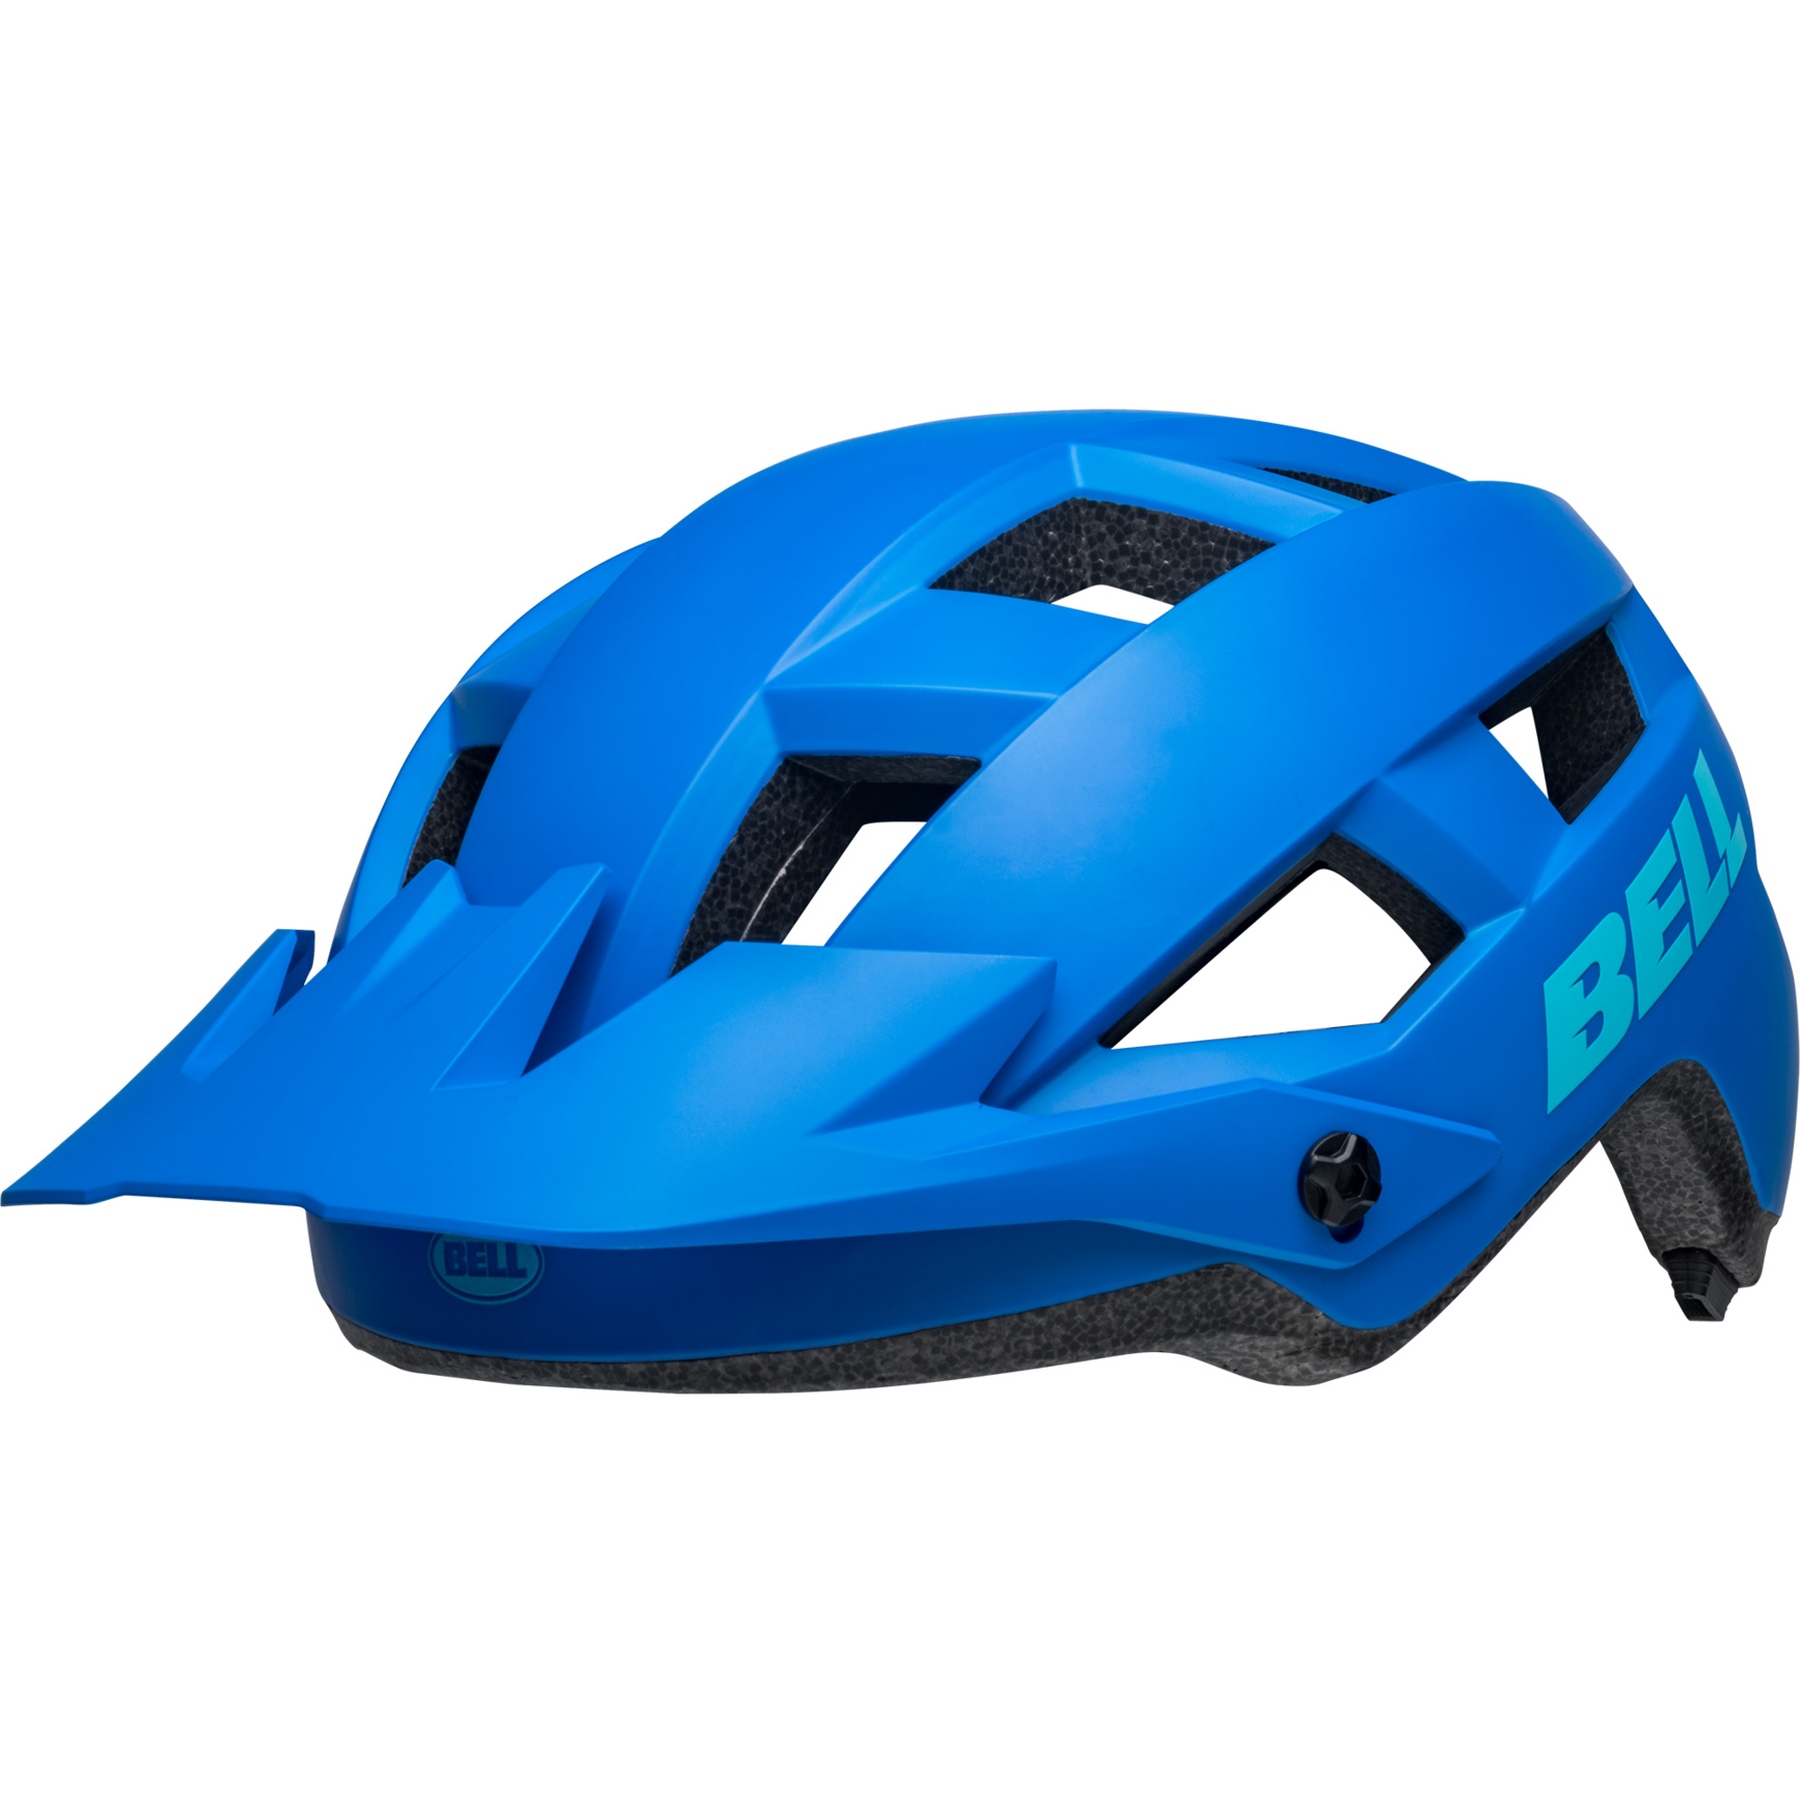 Produktbild von Bell Spark 2 Mips Helm - matte dark blue